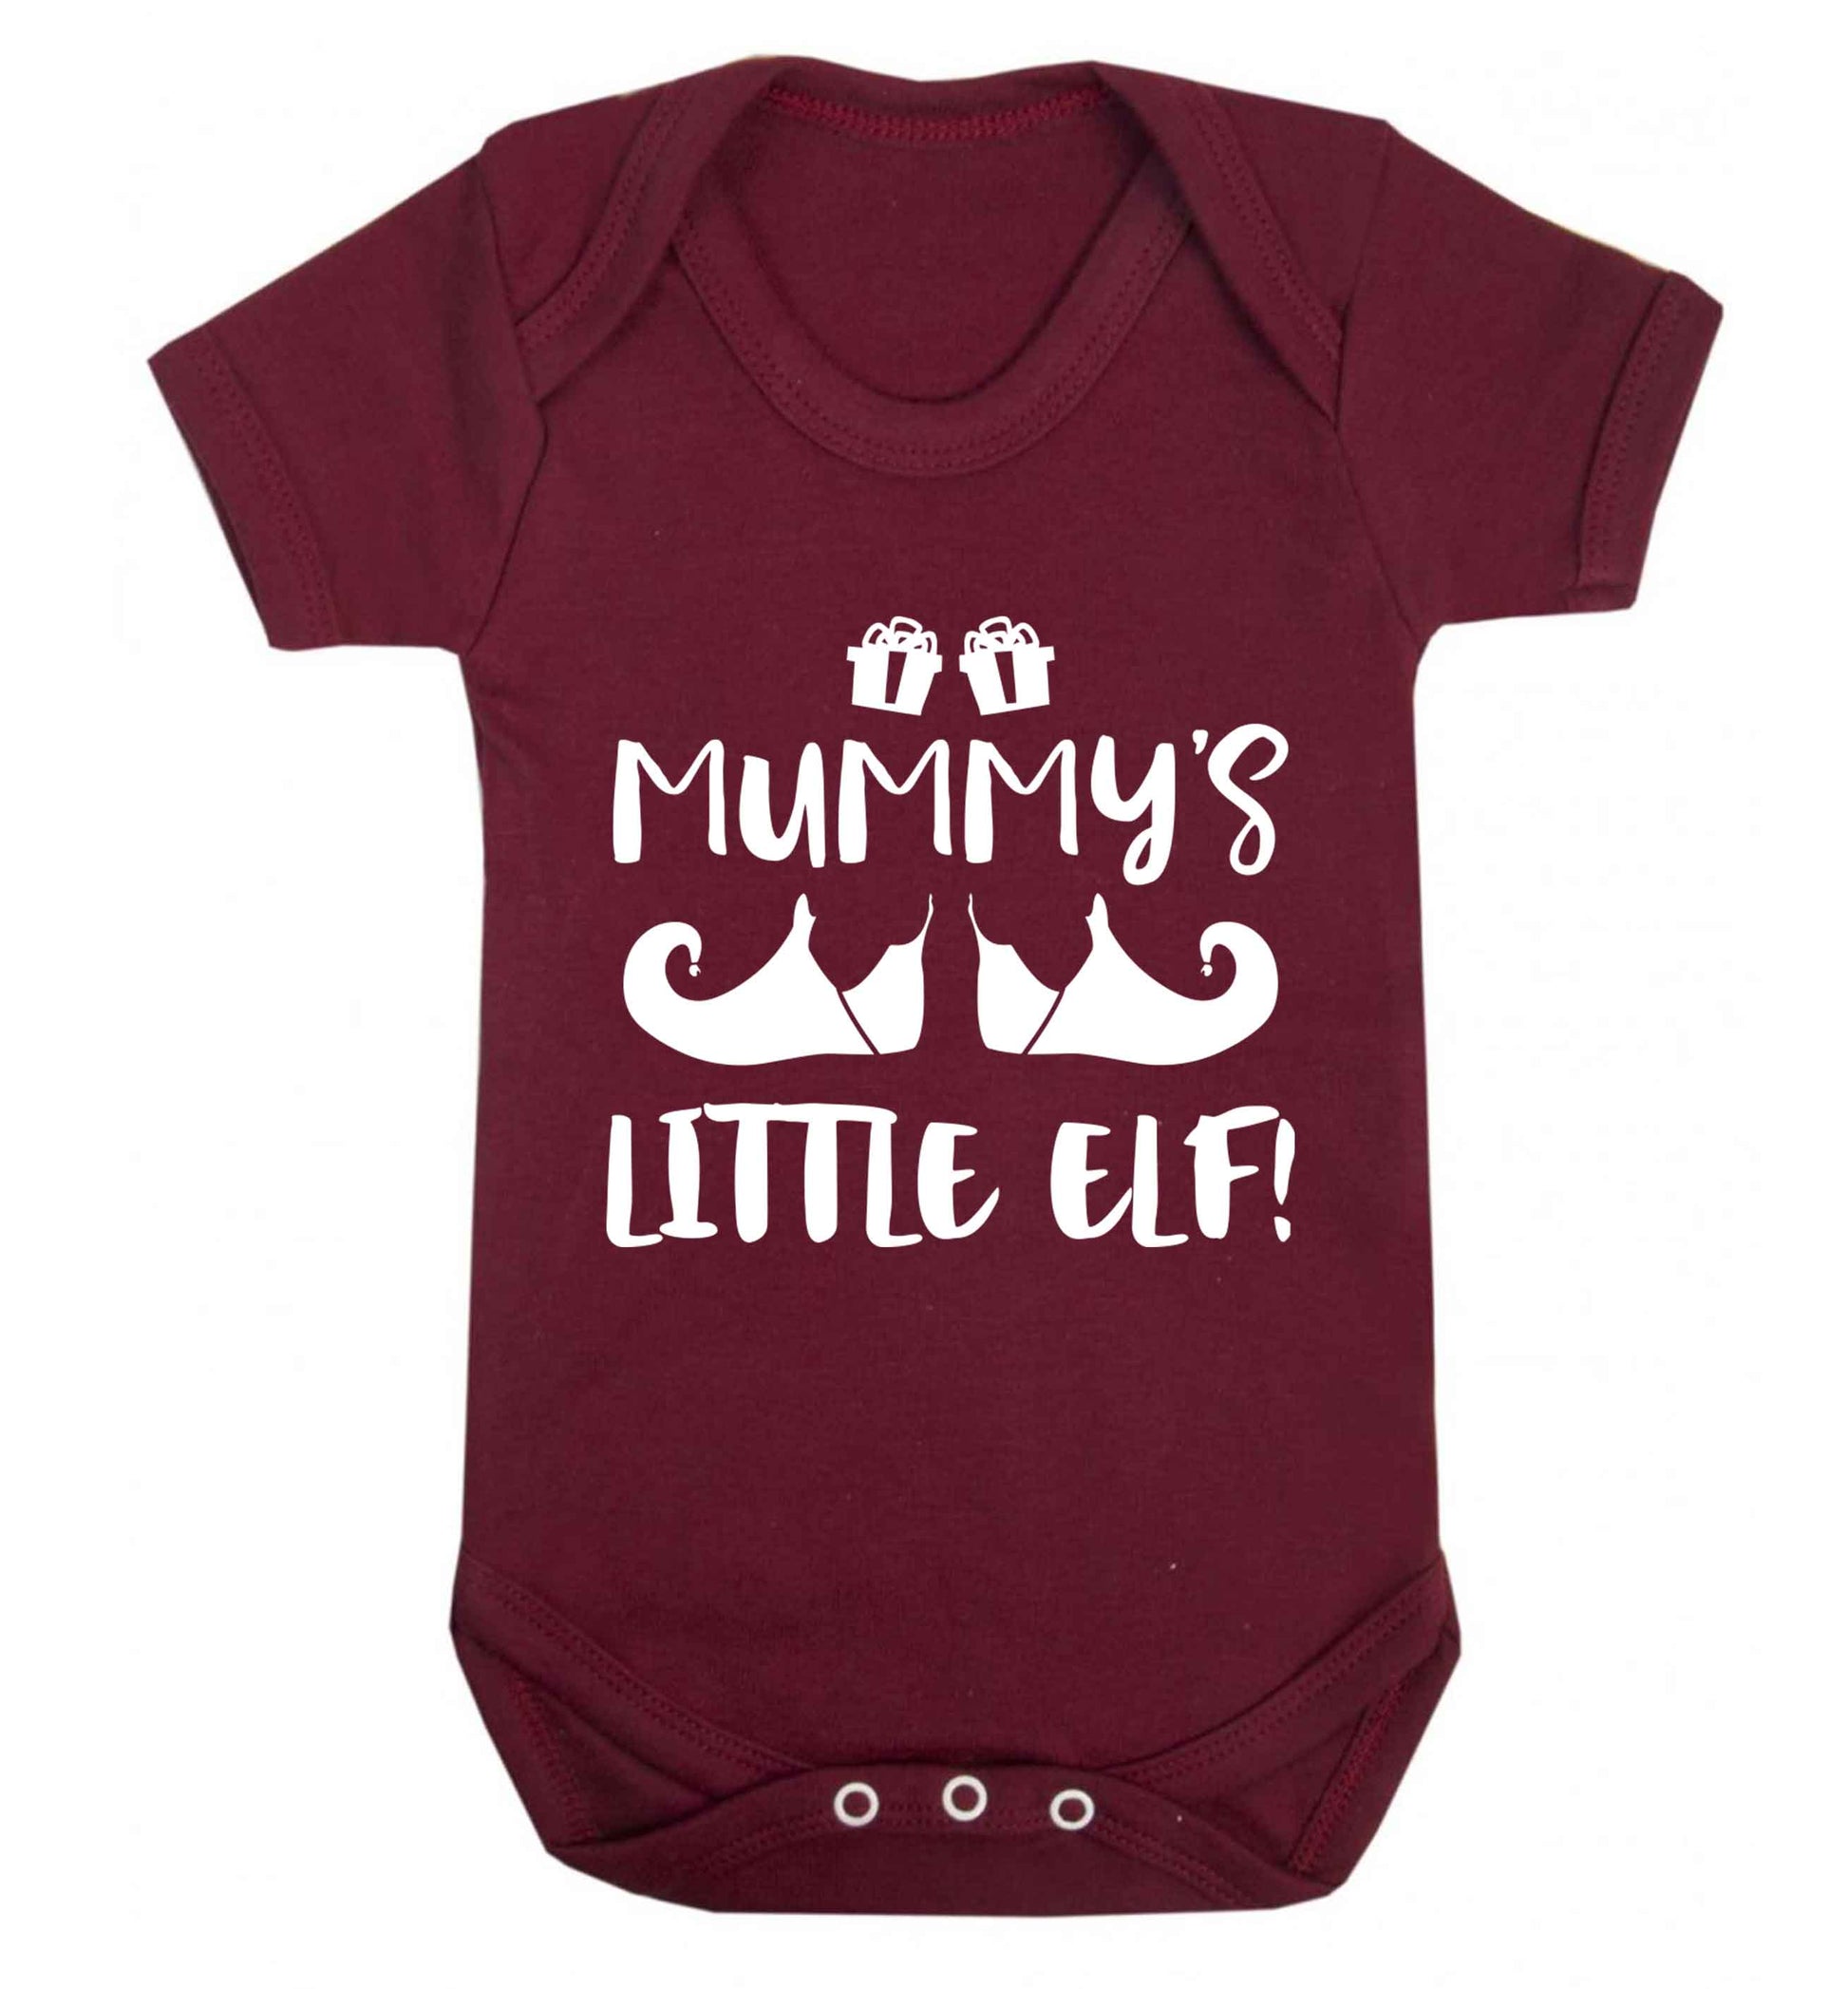 Mummy's little elf Baby Vest maroon 18-24 months